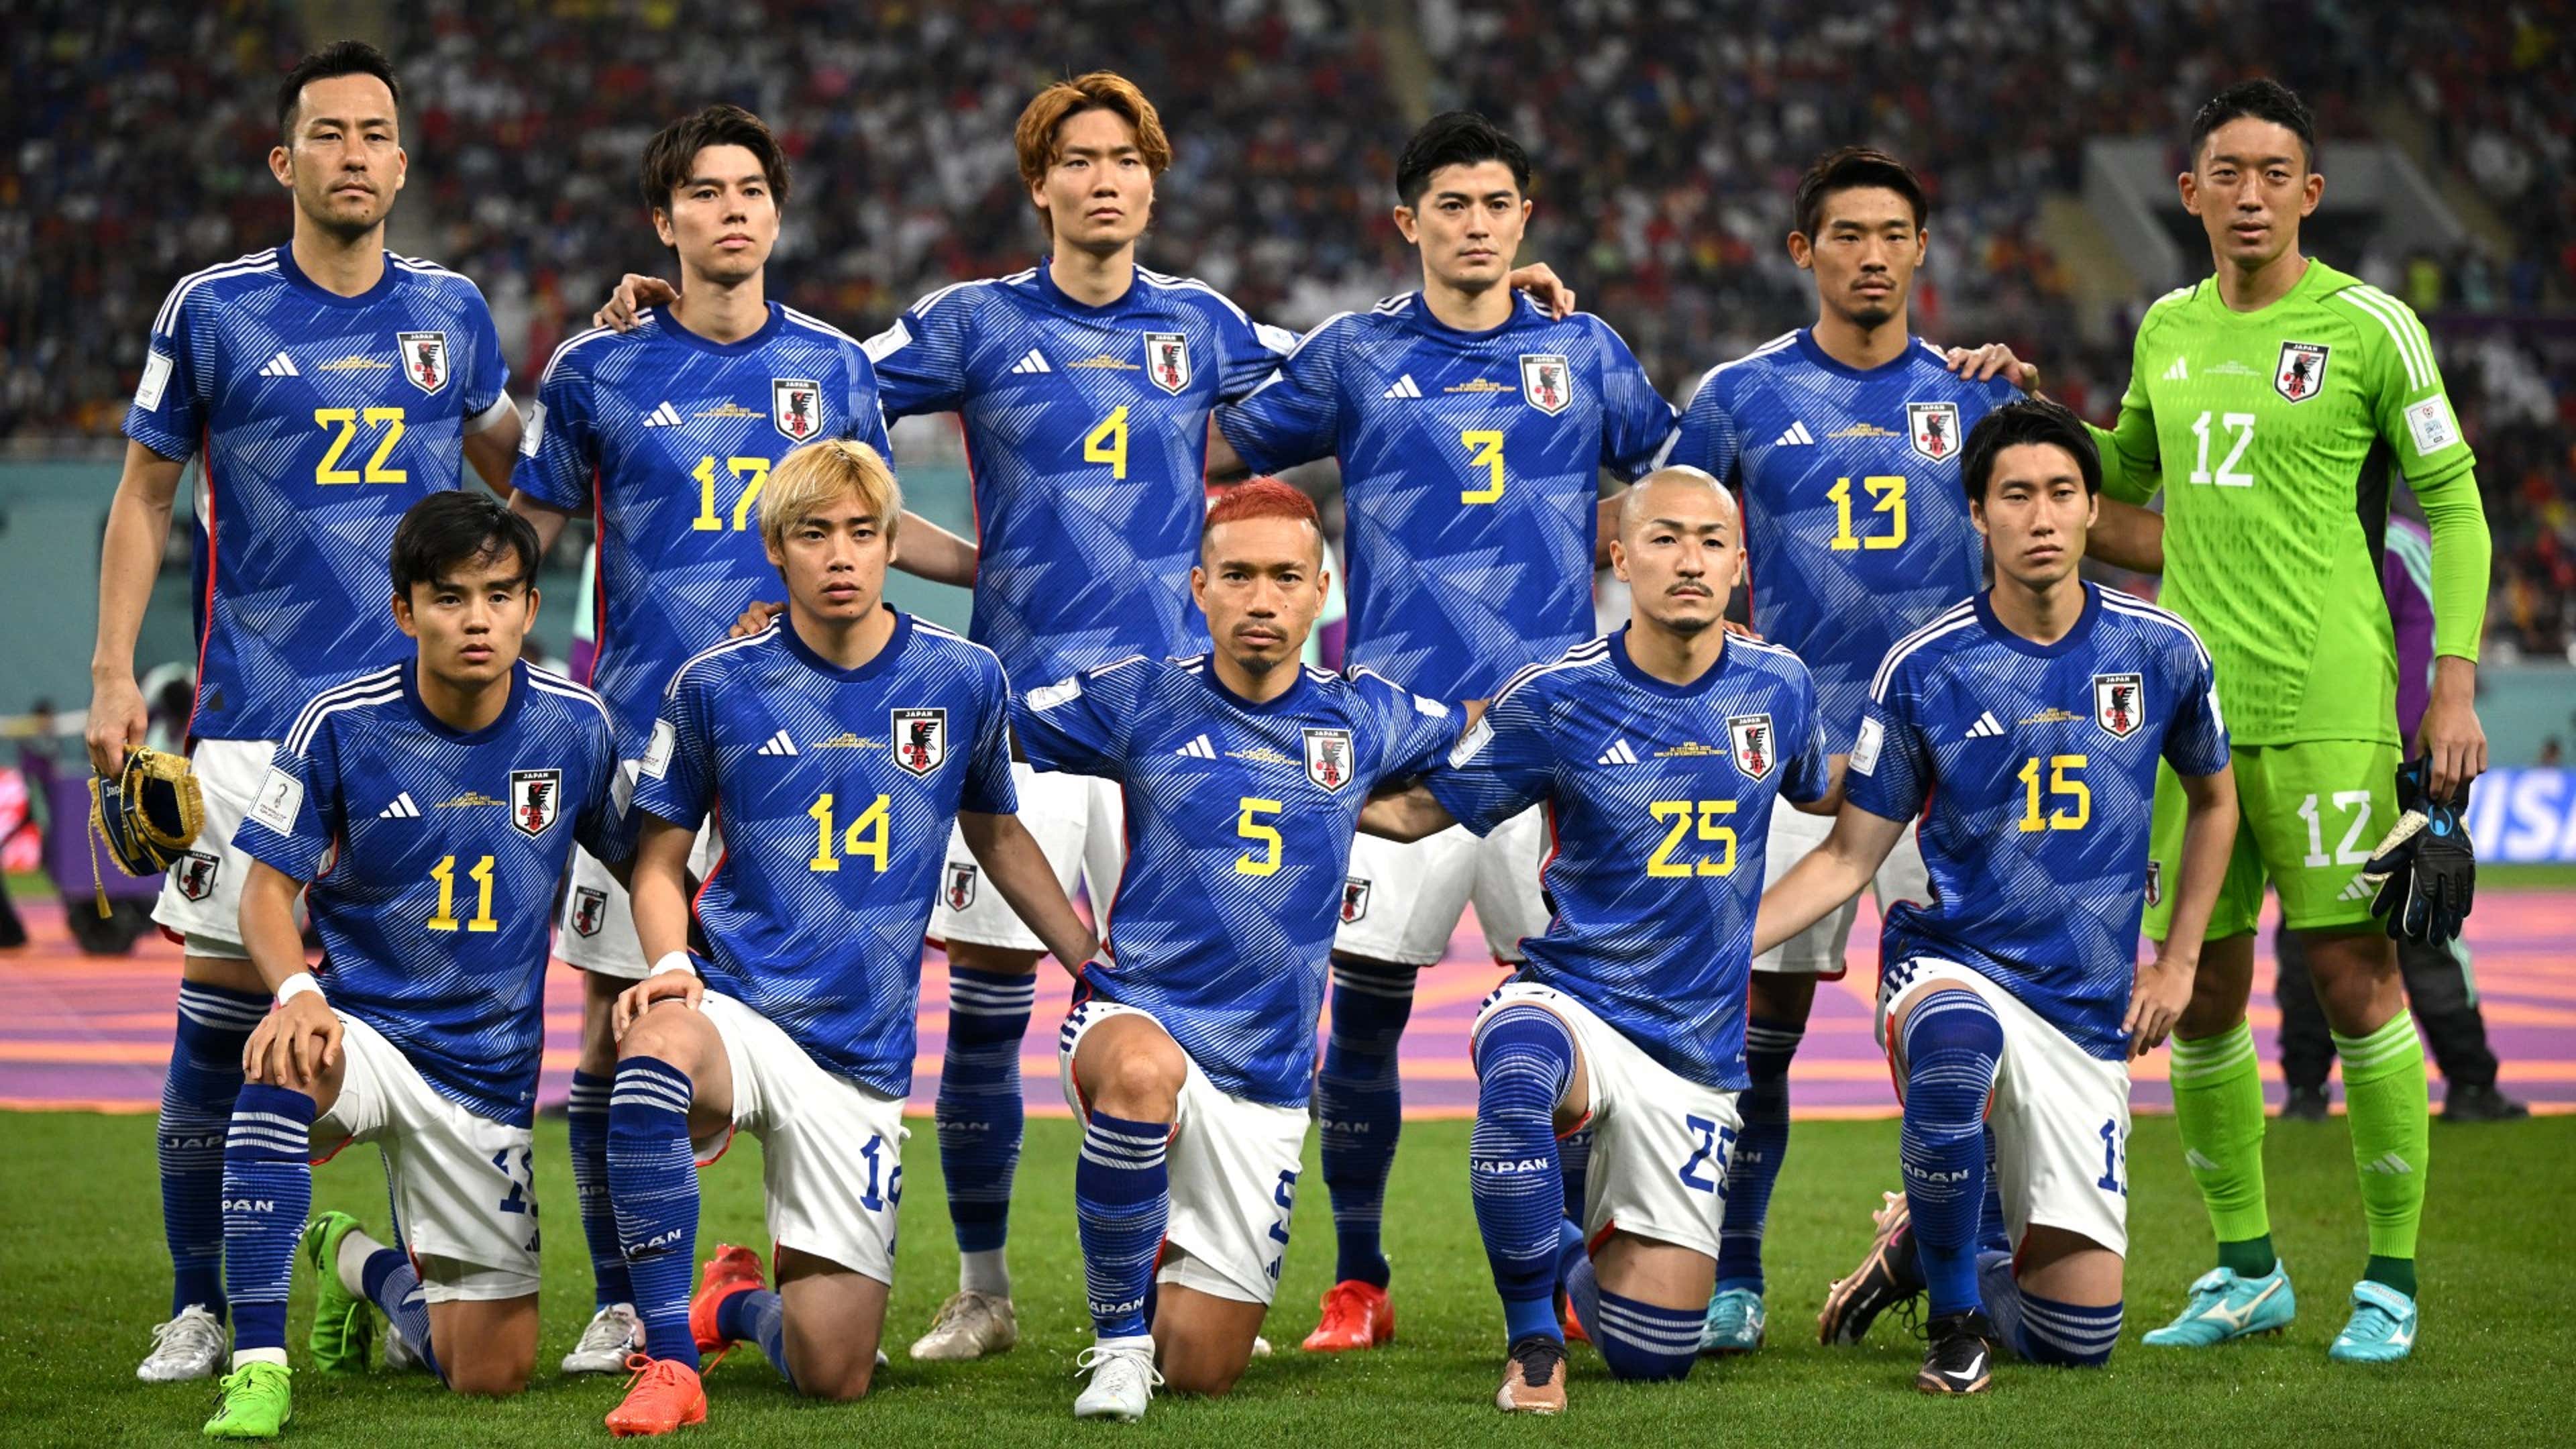 Análise da temporada 2018 da J-League, Futebol no Japão